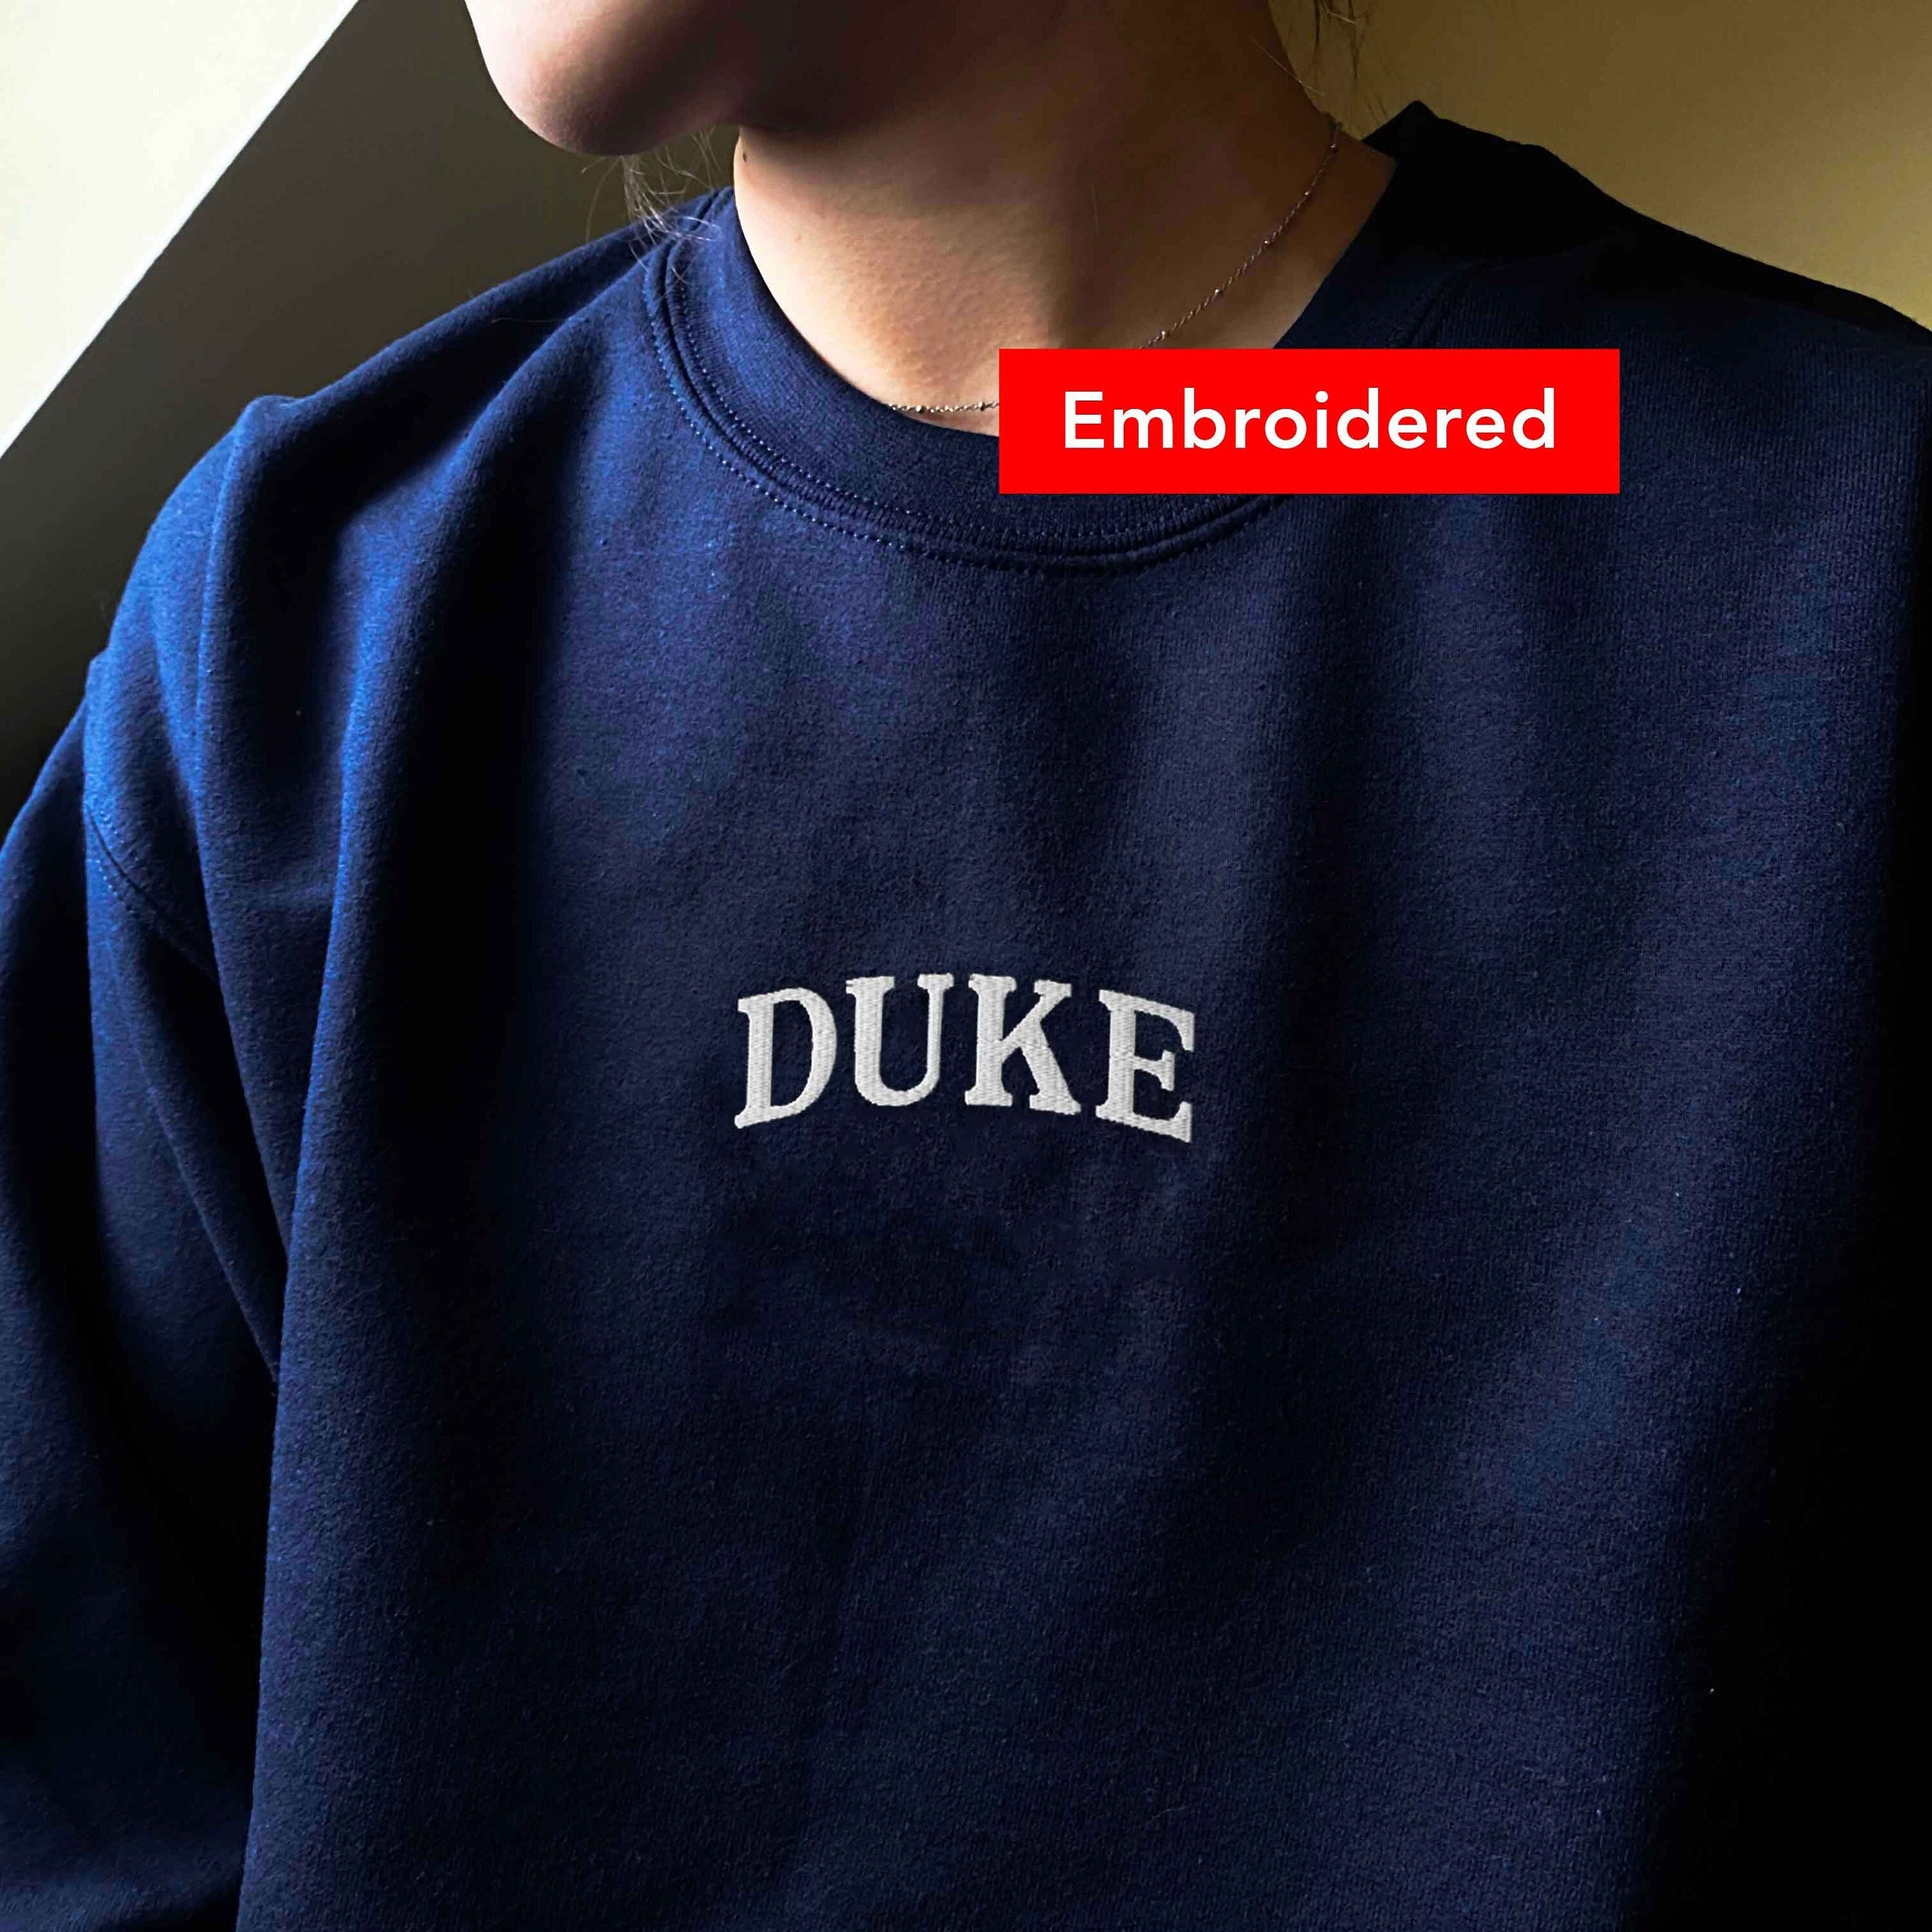 Duke Sweatshirt Embroidered Crewneck - Etsy UK